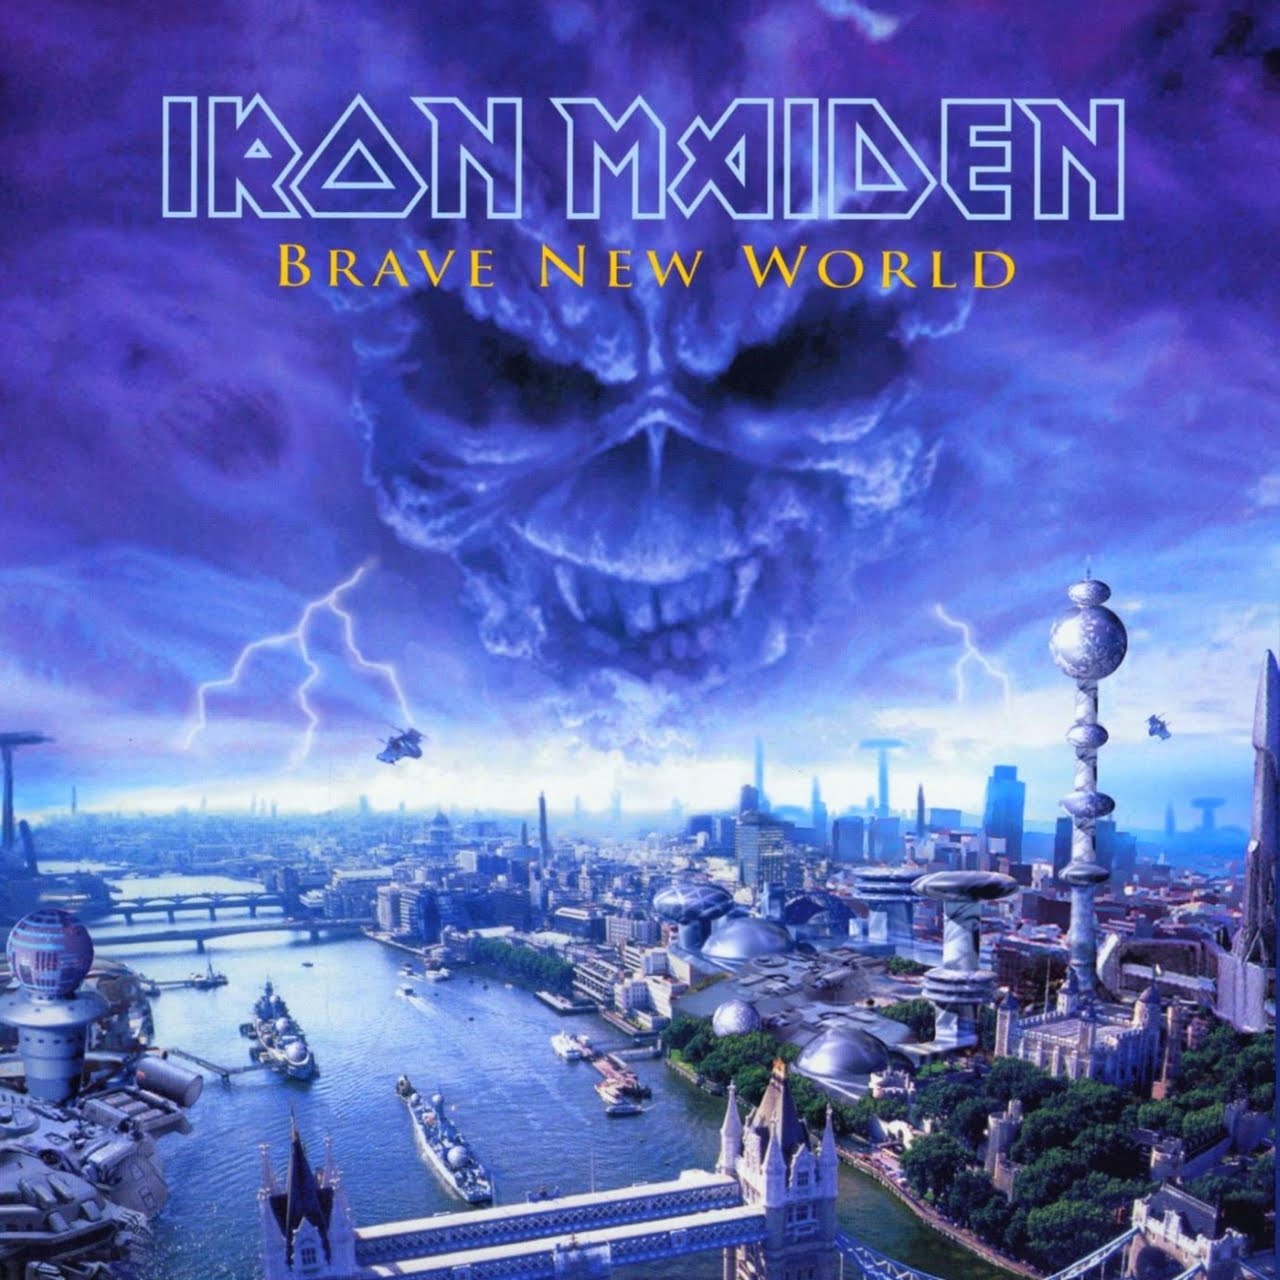 Best Tune on "Brave New World" by Iron Maiden Brave+New+World+Iron+Maiden